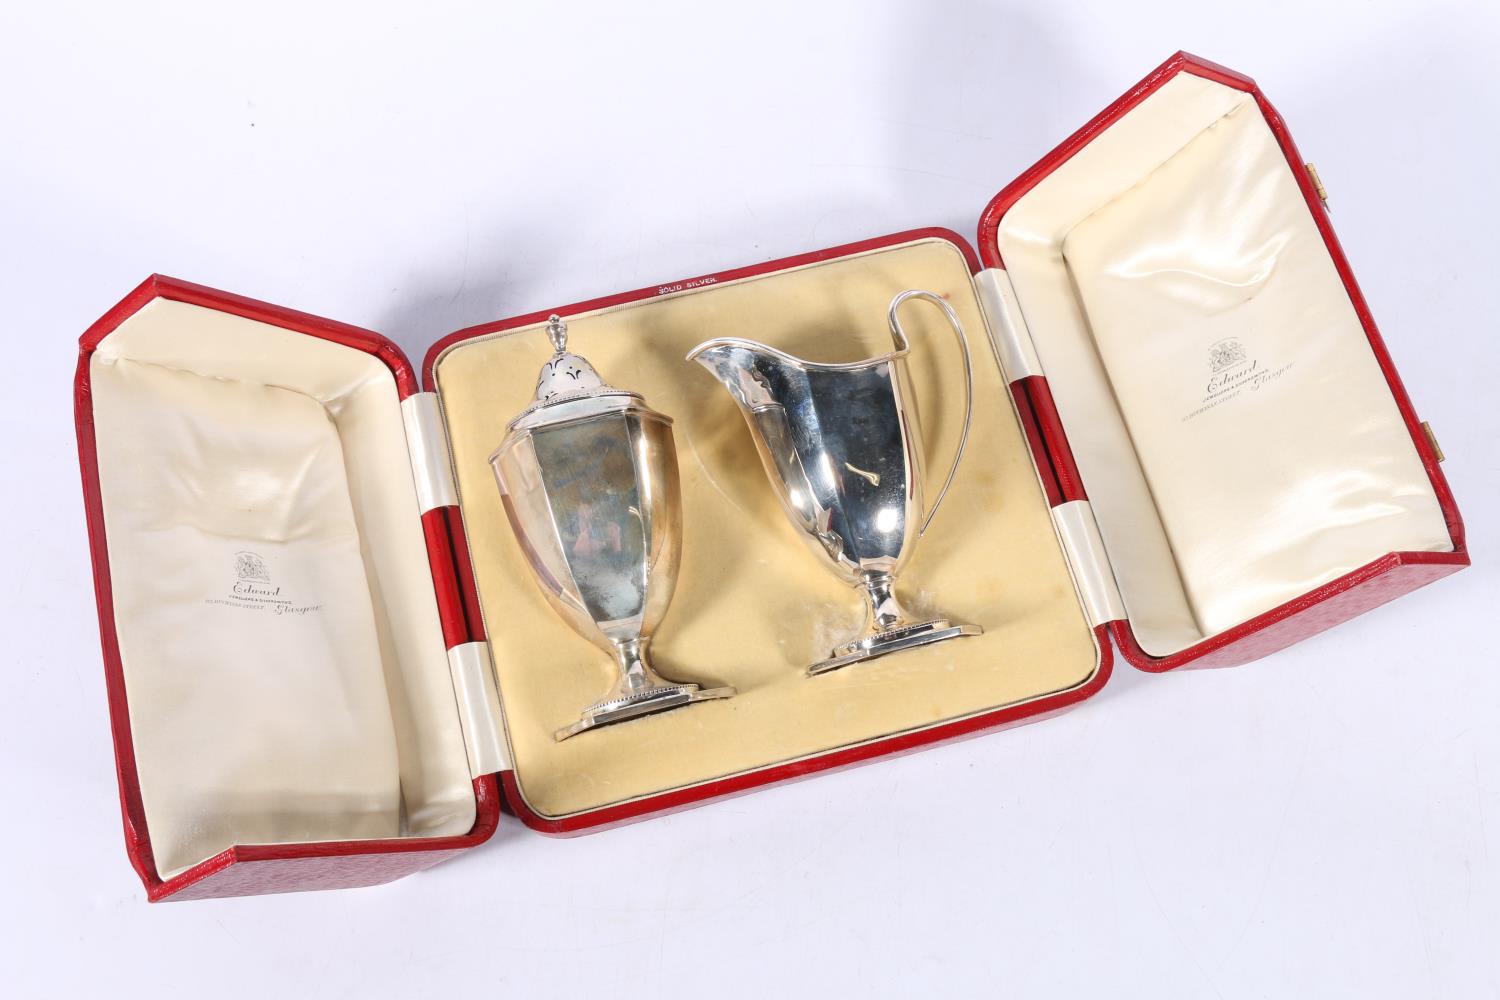 George V silver sugar castor and milk jug by George Edward & Sons (David & George Edward),